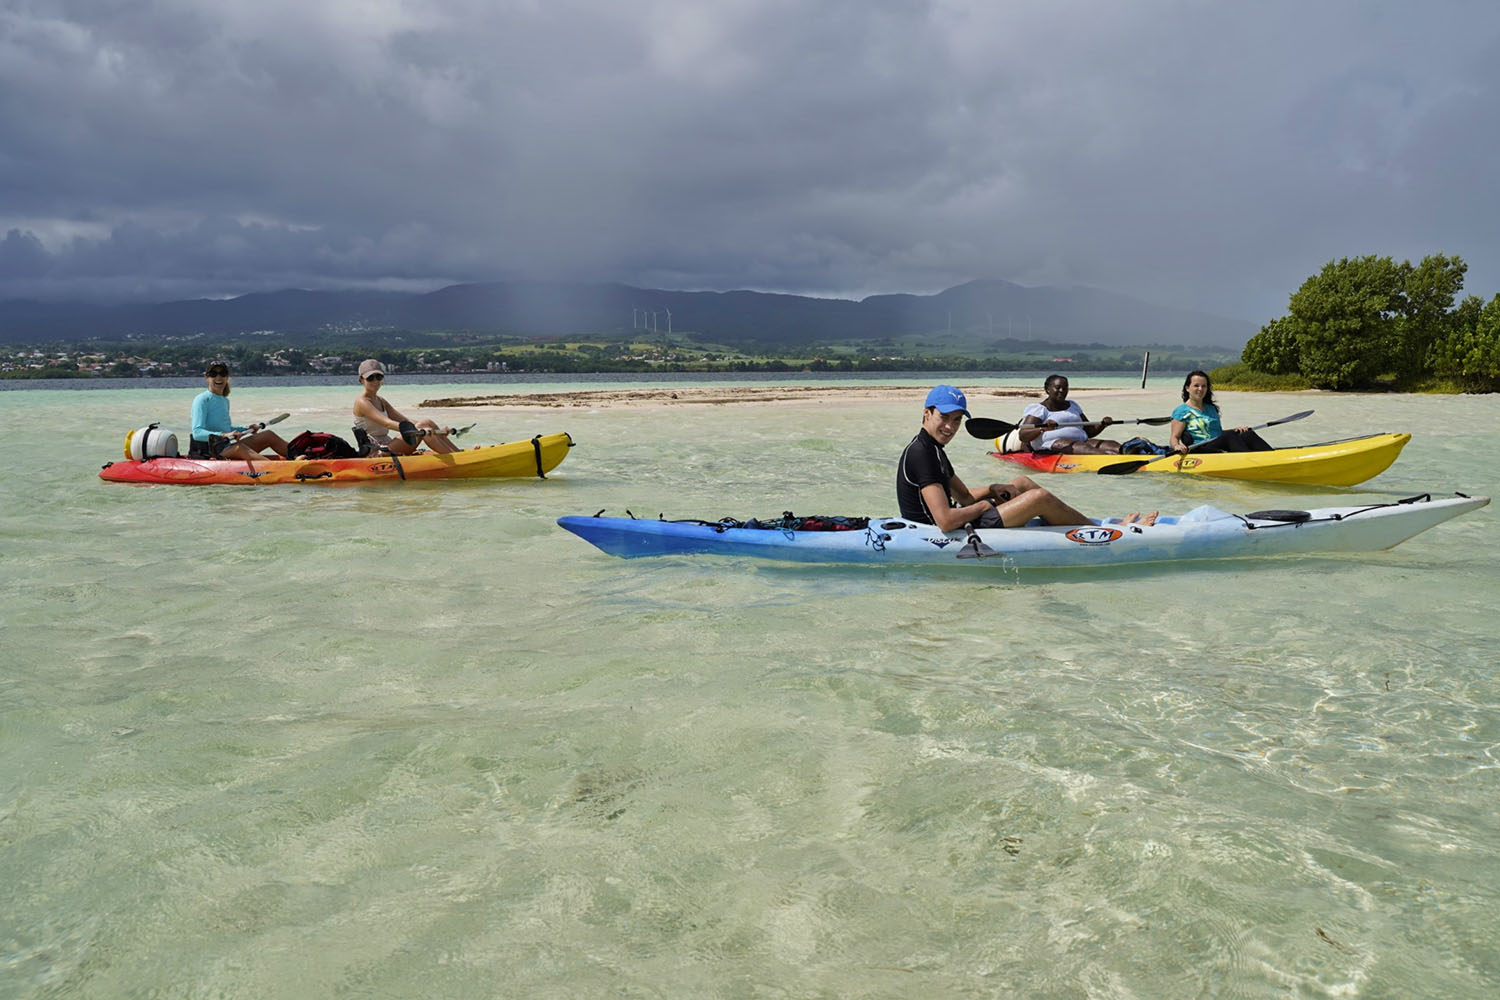 Cétacés et faune marine de Guadeloupe, voyage scientifique. Kayak dans la Mangrove © Tamtampagaie